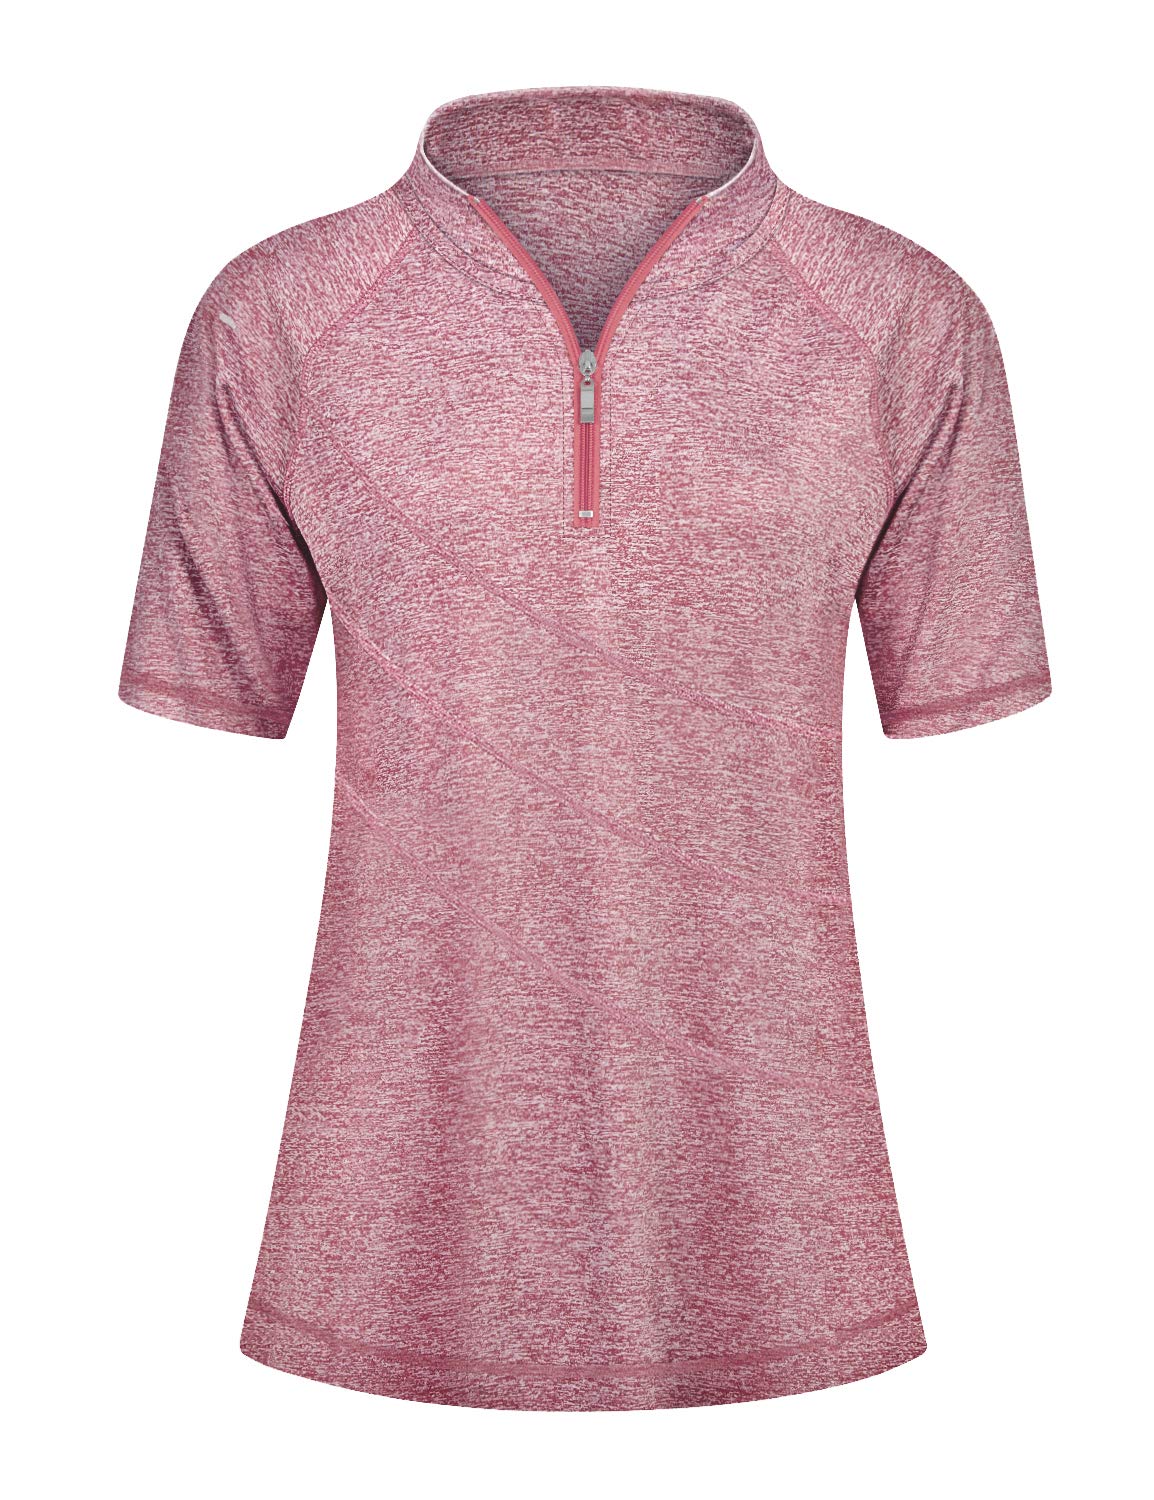 Cucuchy Womens Golf Tennis Dress Sleeveless Athletic Sports Workout Dresses